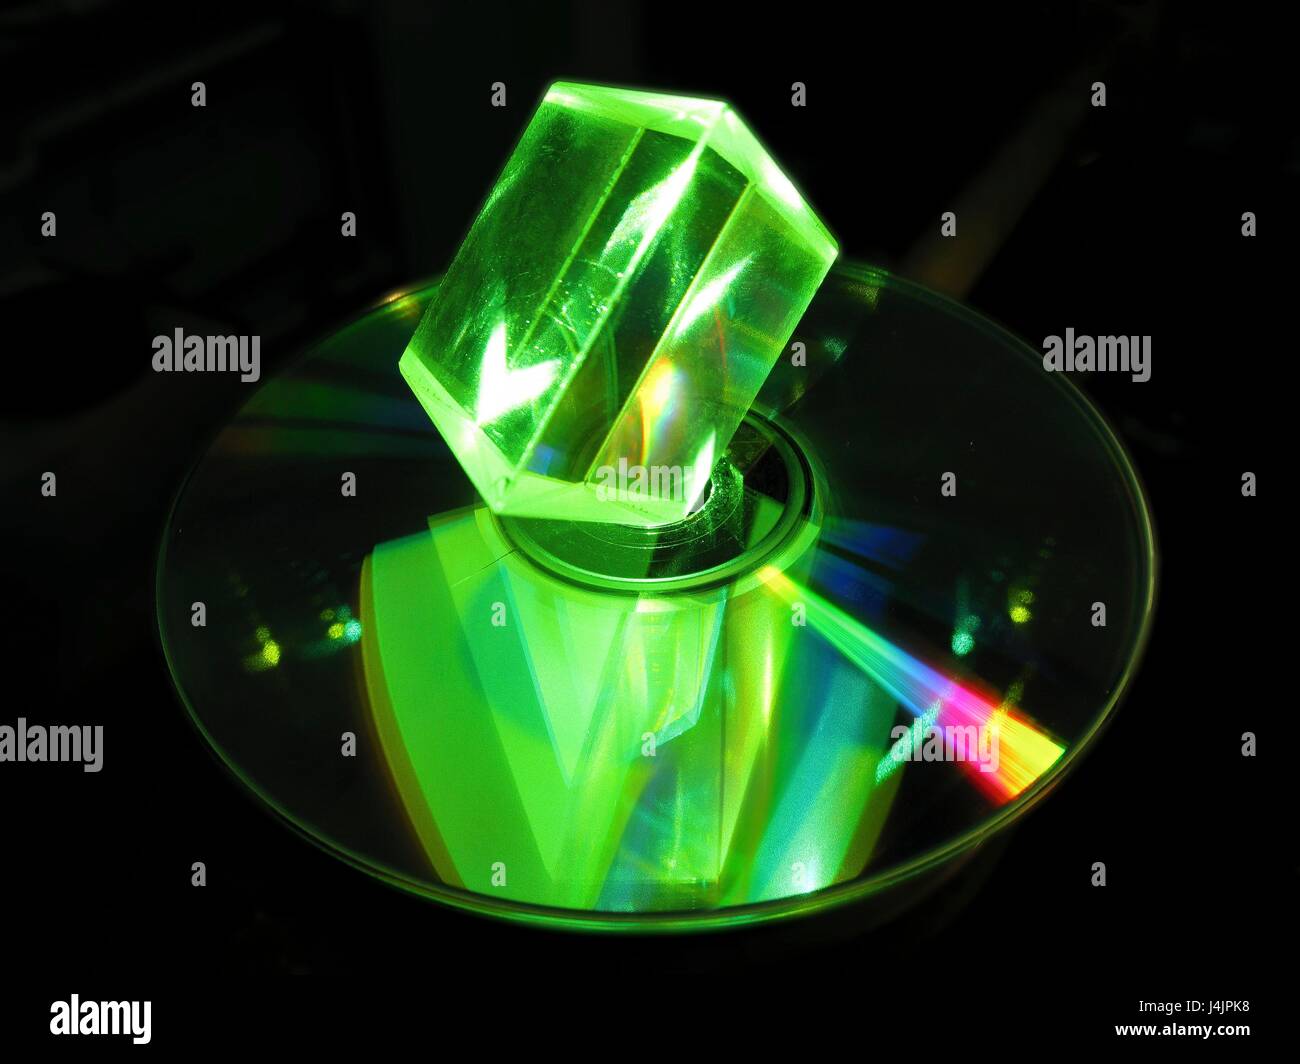 Prisma di vetro e laser. Prisma di vetro illuminato con luce laser verde, con una riflessione visto in un disco ottico. Compact disc (CD) e digital versatile disc (DVD) sono esempi di dischi ottici. Prismi di vetro sono dispositivi ottici utilizzati per rifrangere e di Foto Stock